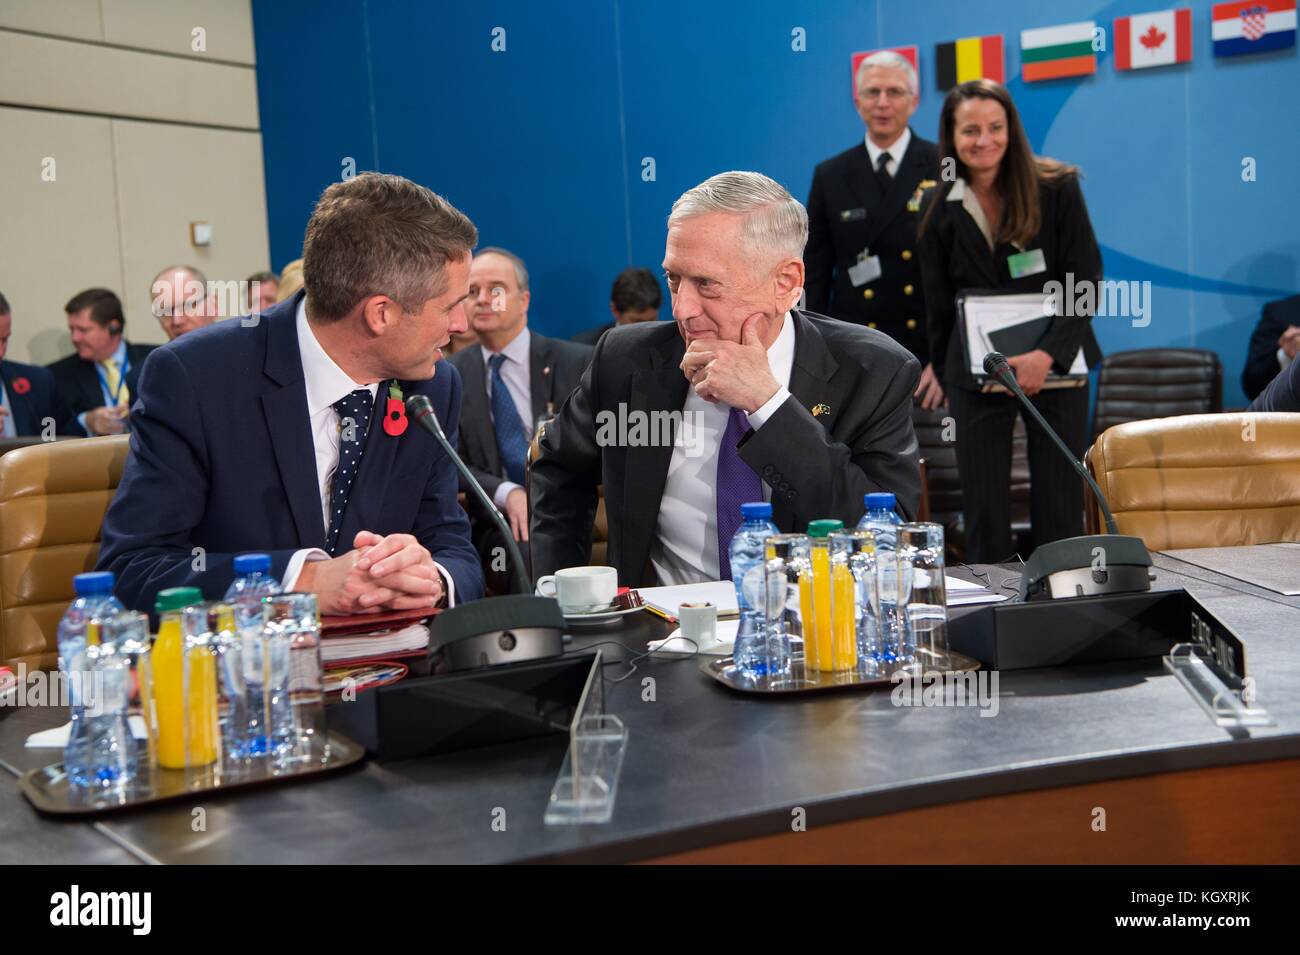 Vereinigtes Königreich Staatssekretär für Verteidigung gavin Williamson (links) spricht Verteidigungsminister der USA James Mattis während einer Nordatlantischen Rat im NATO-Hauptquartier am 8. November 2017 in Brüssel, Belgien. (Foto von Jette Carr über planetpix) Stockfoto